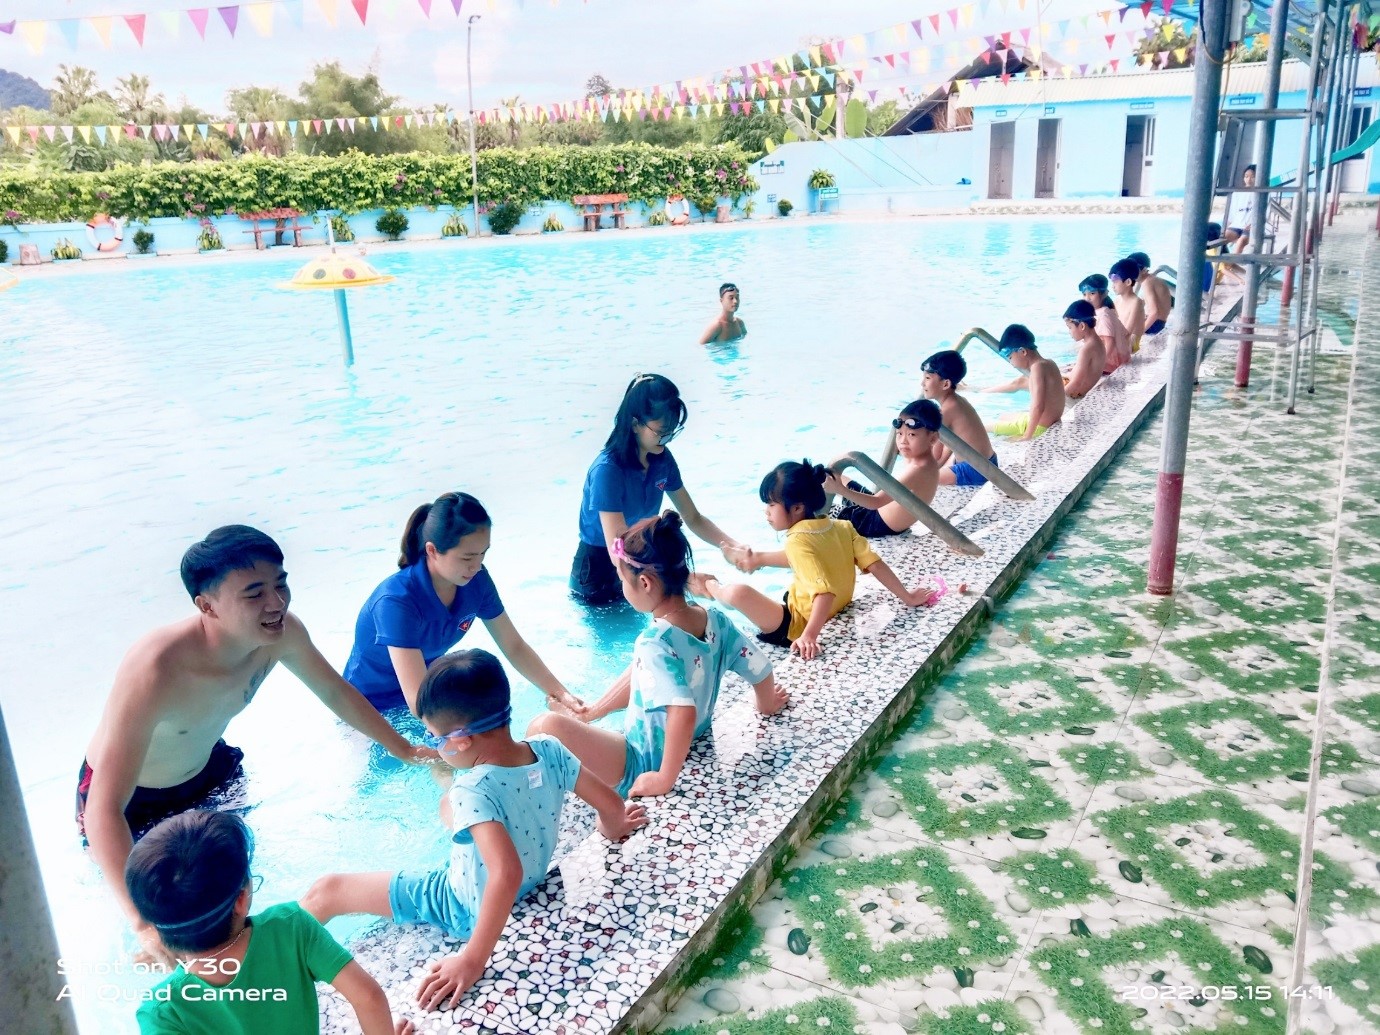 Đoàn xã Thái Sơn (Hàm Yên) phối hợp mở lớp bơi miễn phí cho thanh thiếu nhi trong dịp hè 2022